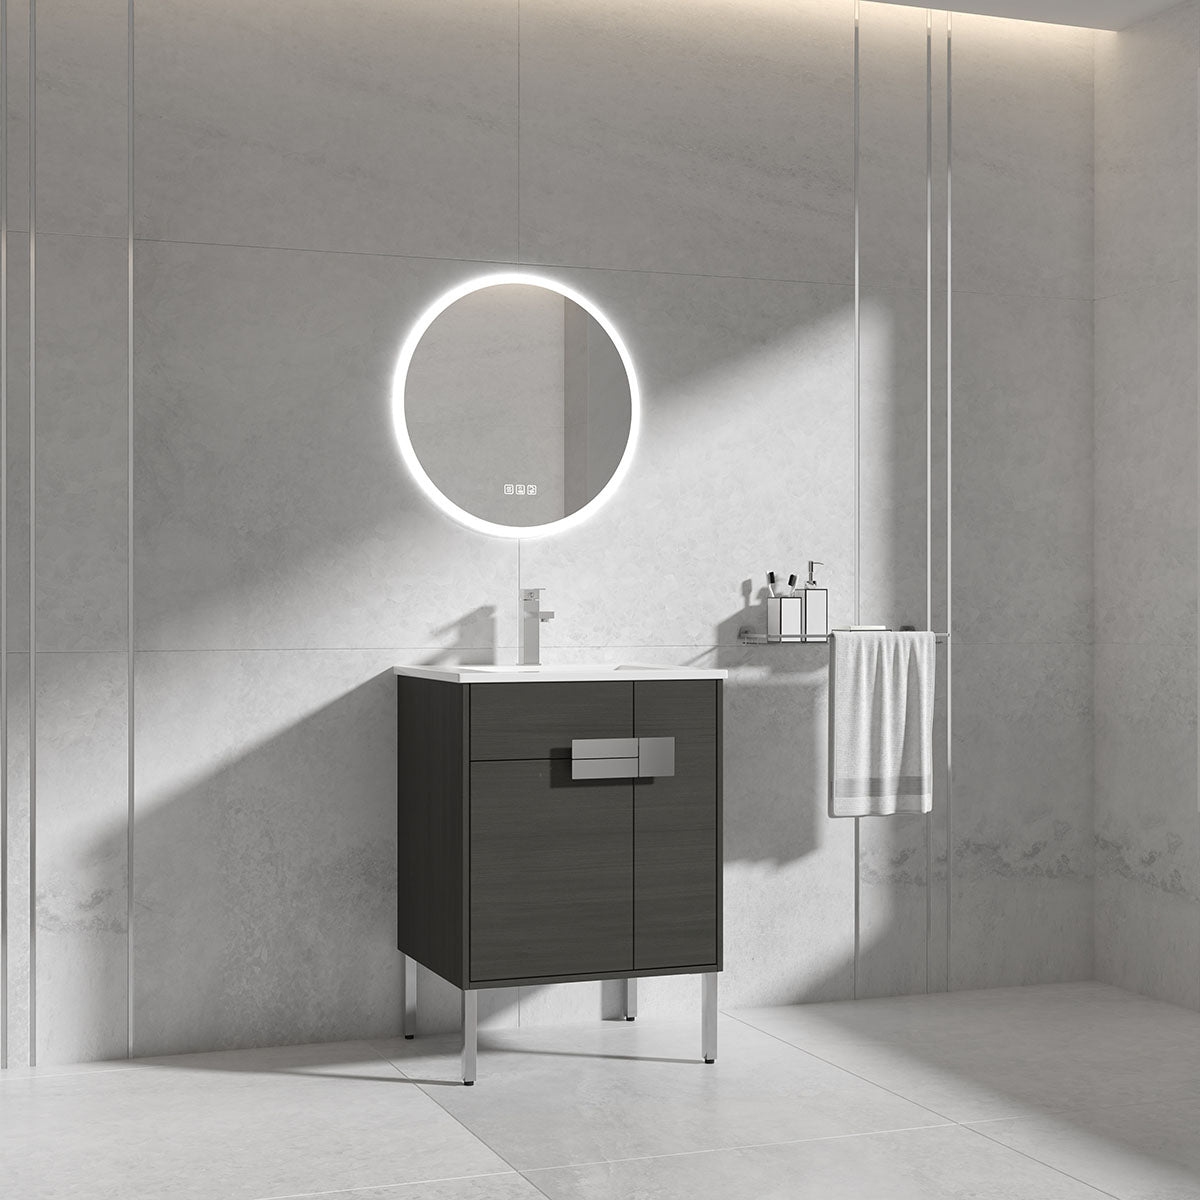 24" Vanity & Ceramic Sink (Grey Teak) V9010 Series - iStyle Bath